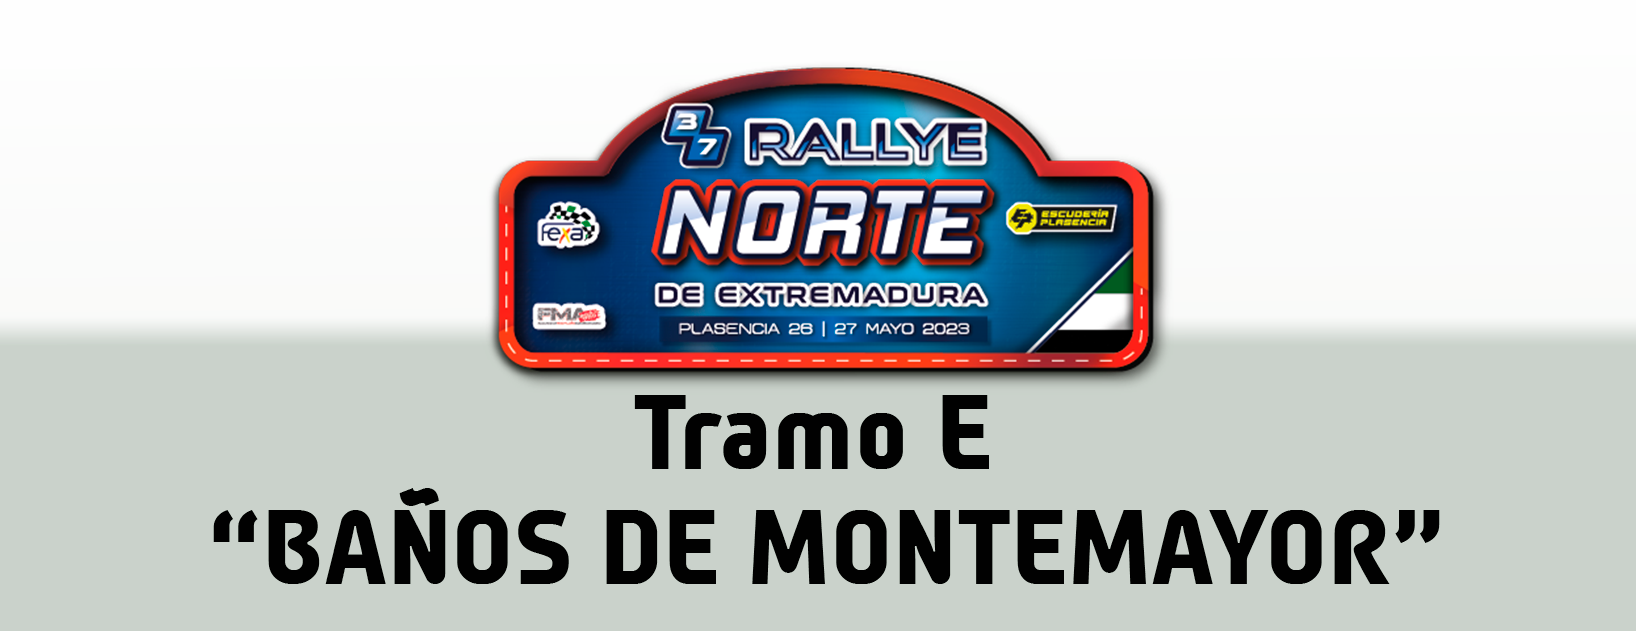 Tramo E1 - "Baños de Montemayor", Sale el vehículo 1 a las 16:34 horas.